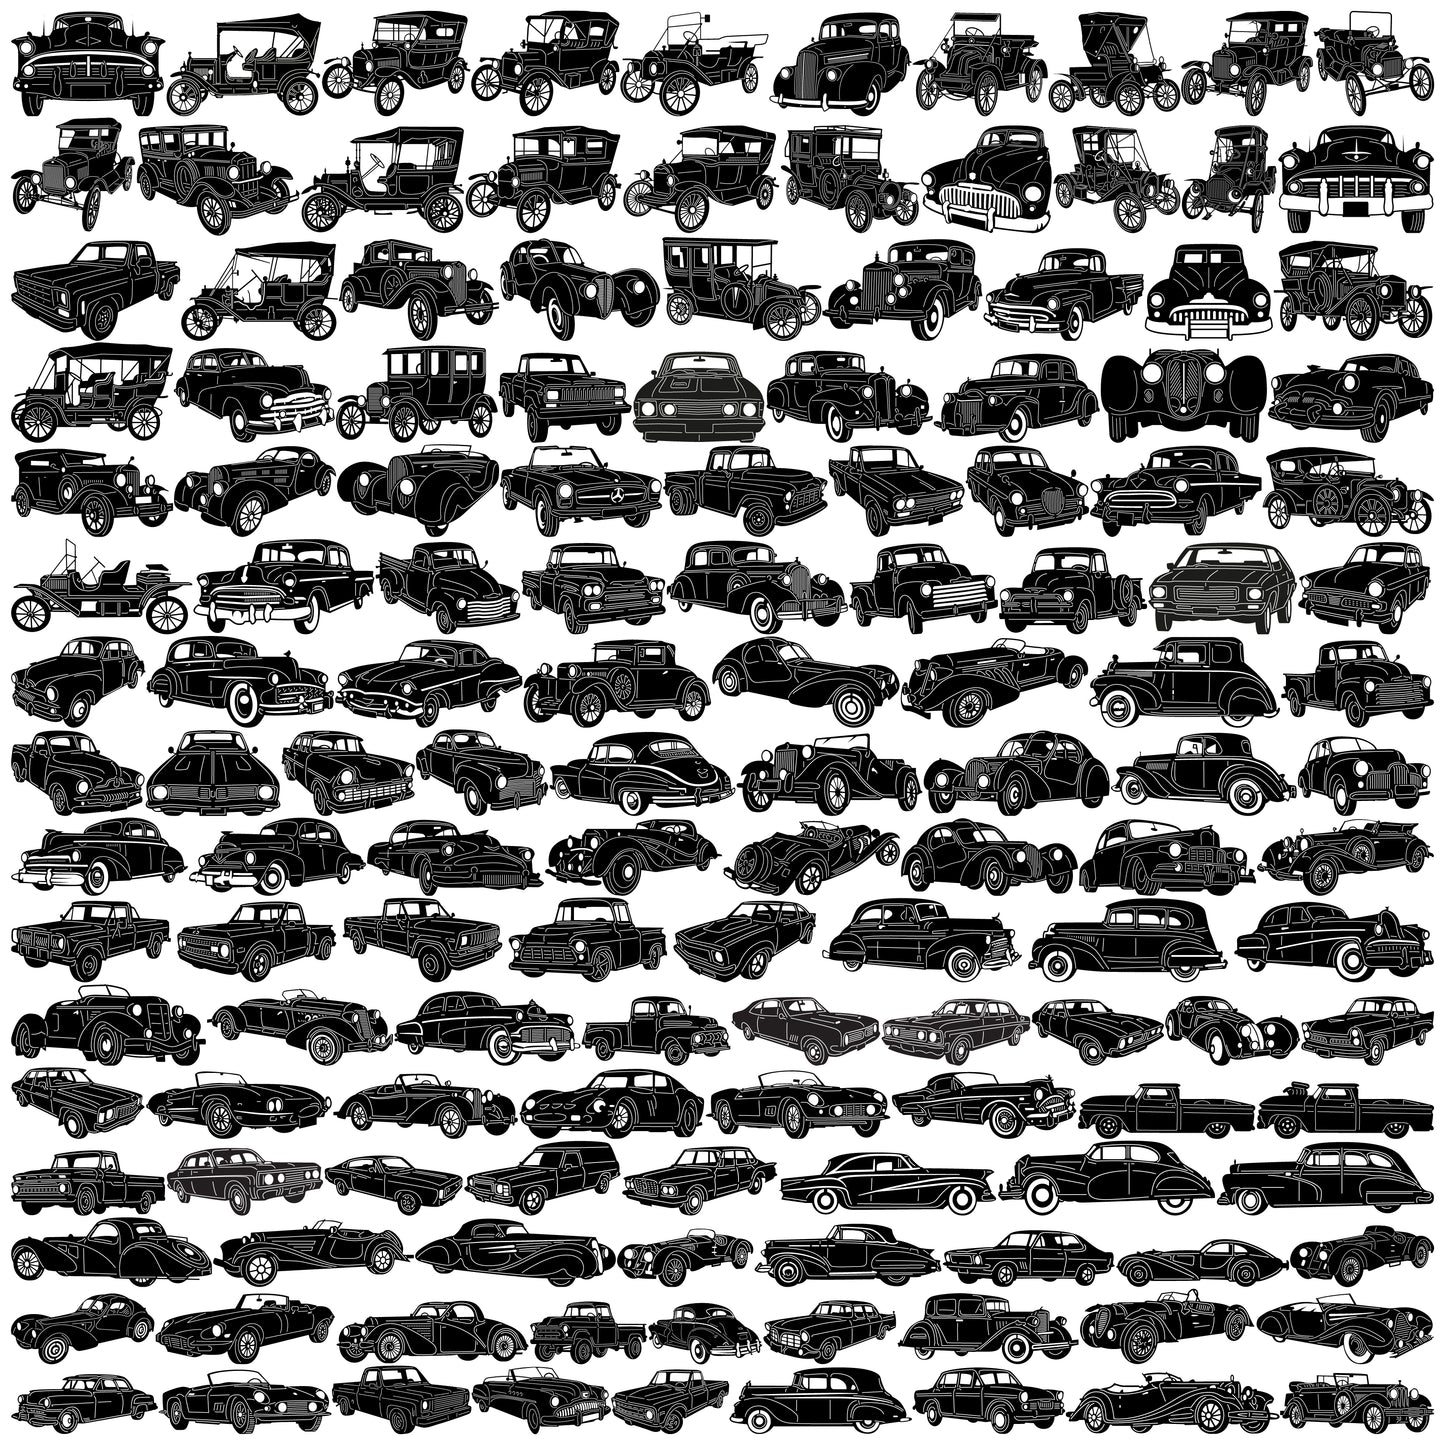 All Cars bundle-DXFforCNC.com